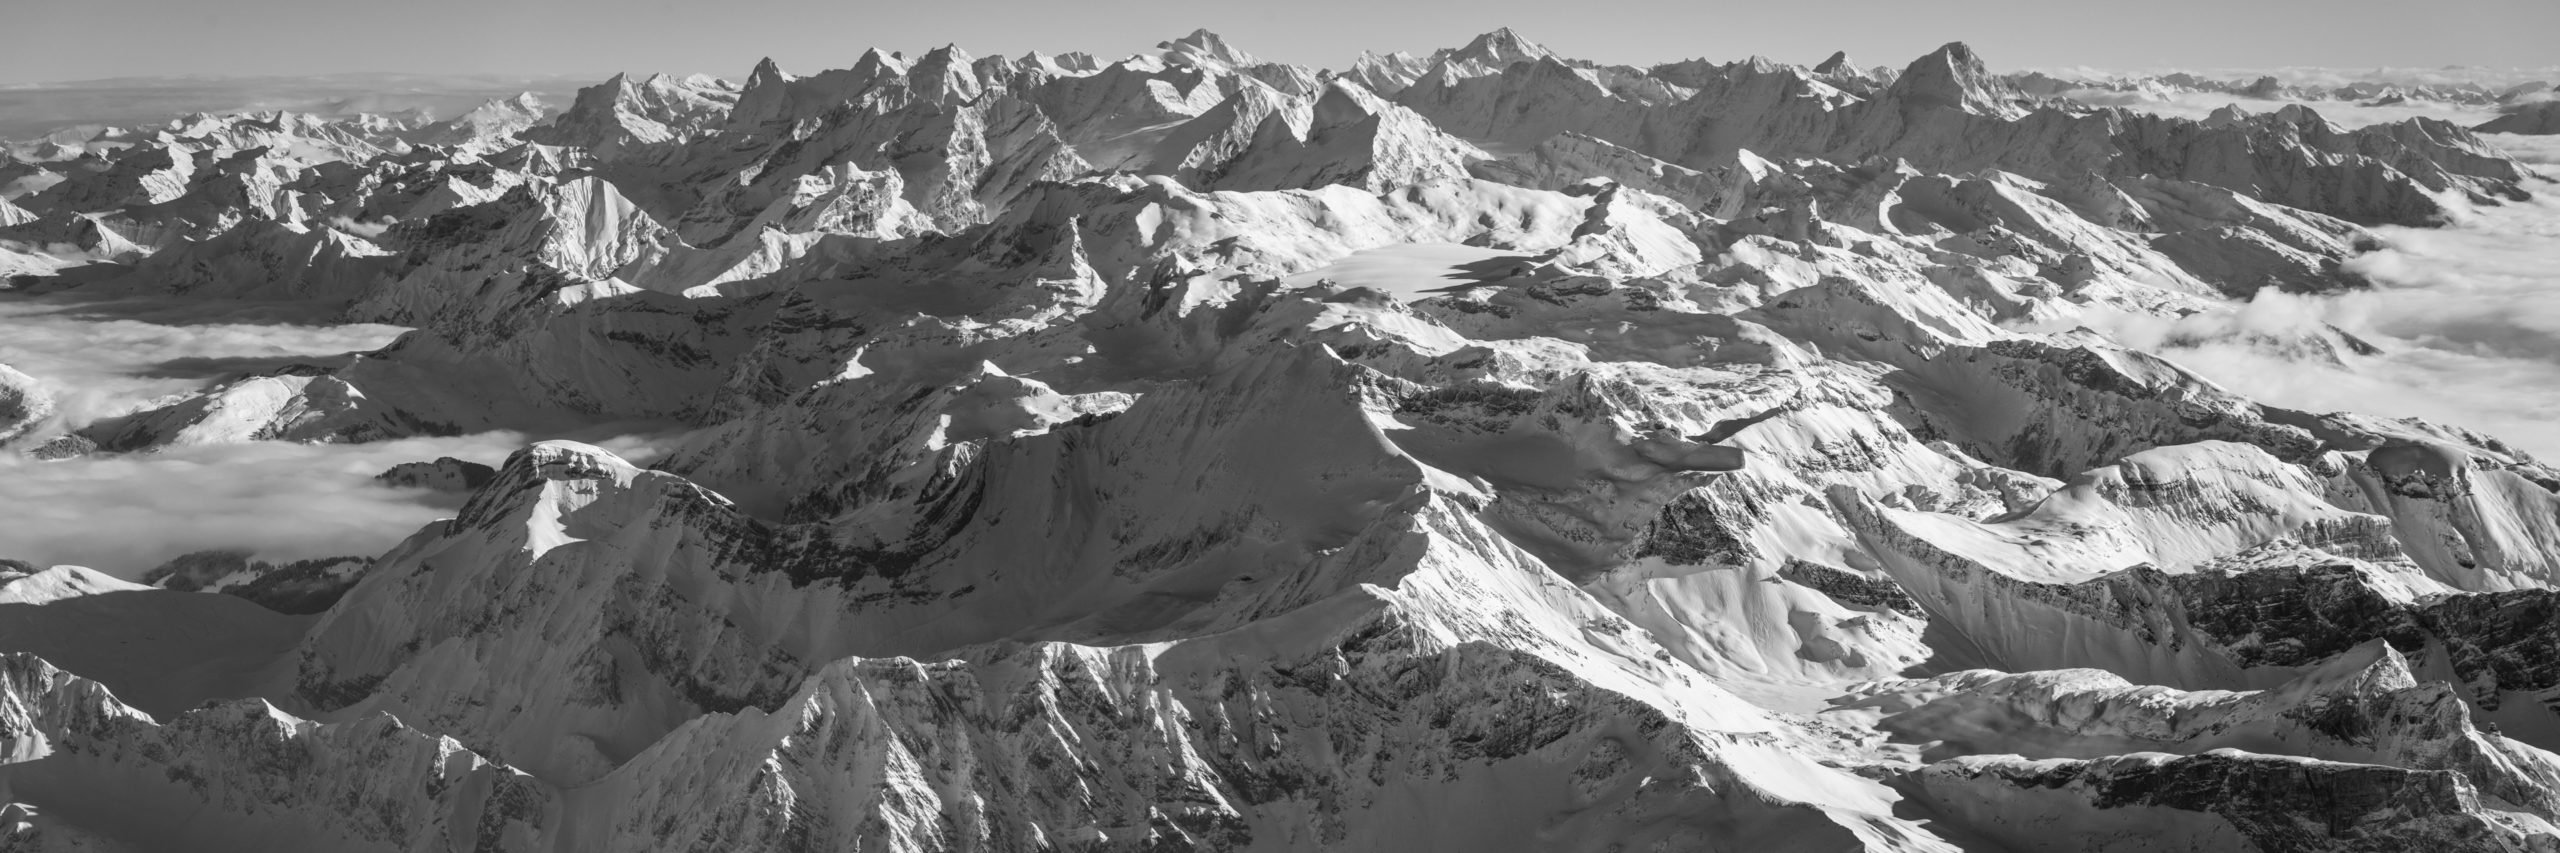 Photo panoramique des Alpes bernoises - Vue depuis les Diablerets (Glacier 3000) sur les alpes bernoises - Photo noir et blanc des Alpes du Nord